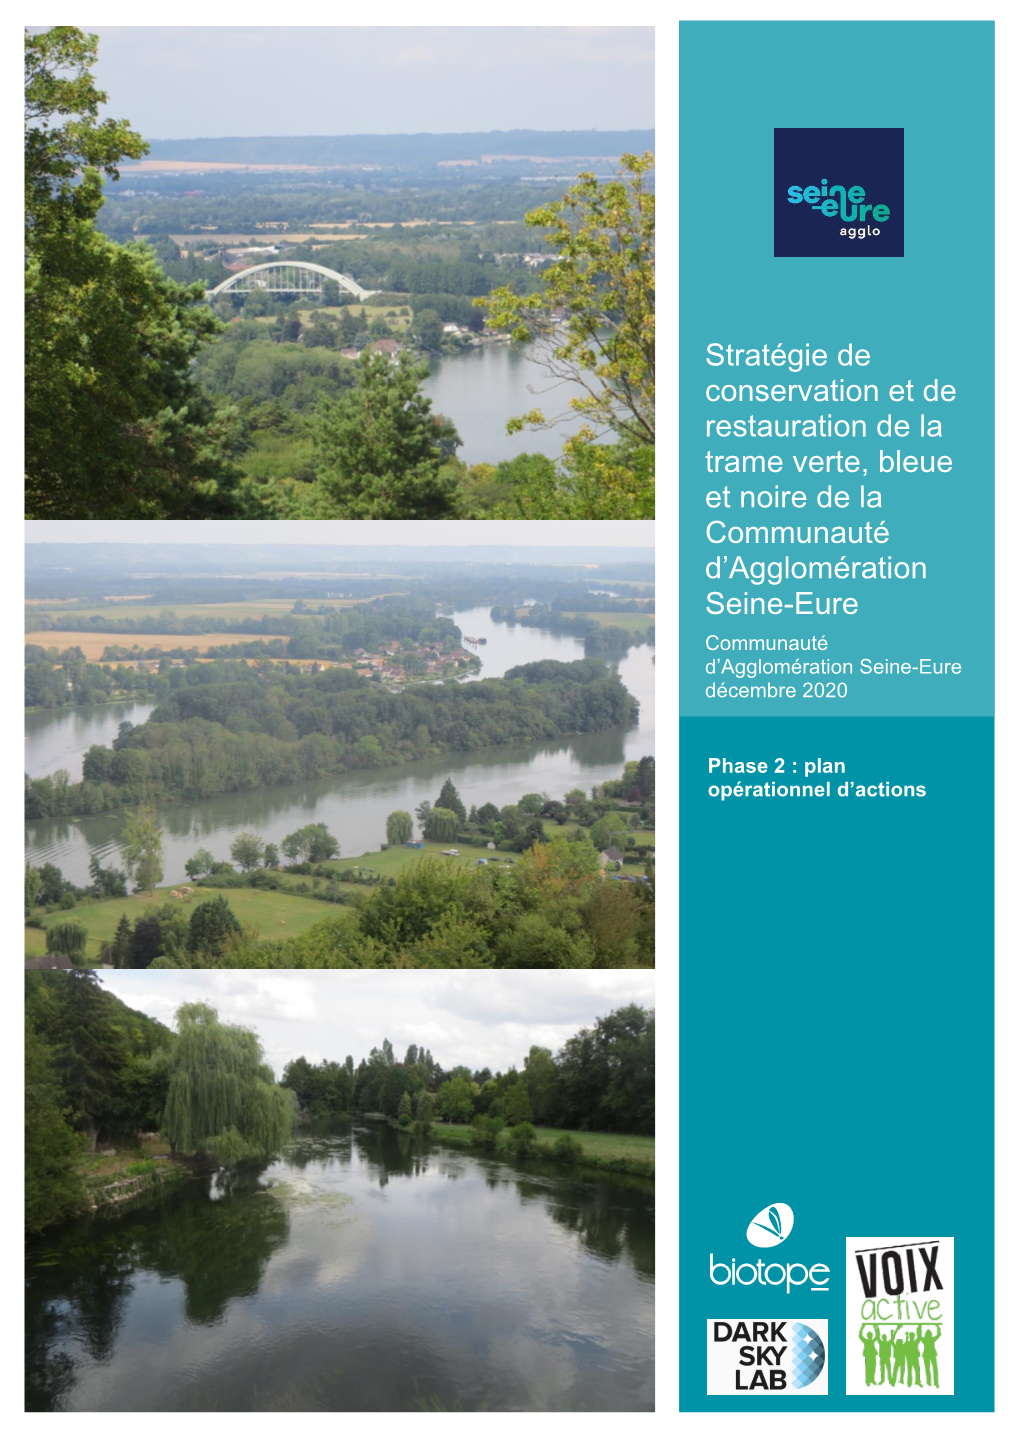 Stratégie De Conservation Et De Restauration De La Trame Verte, Bleue Et Noire De La Communauté D'agglomération Seine-Eure